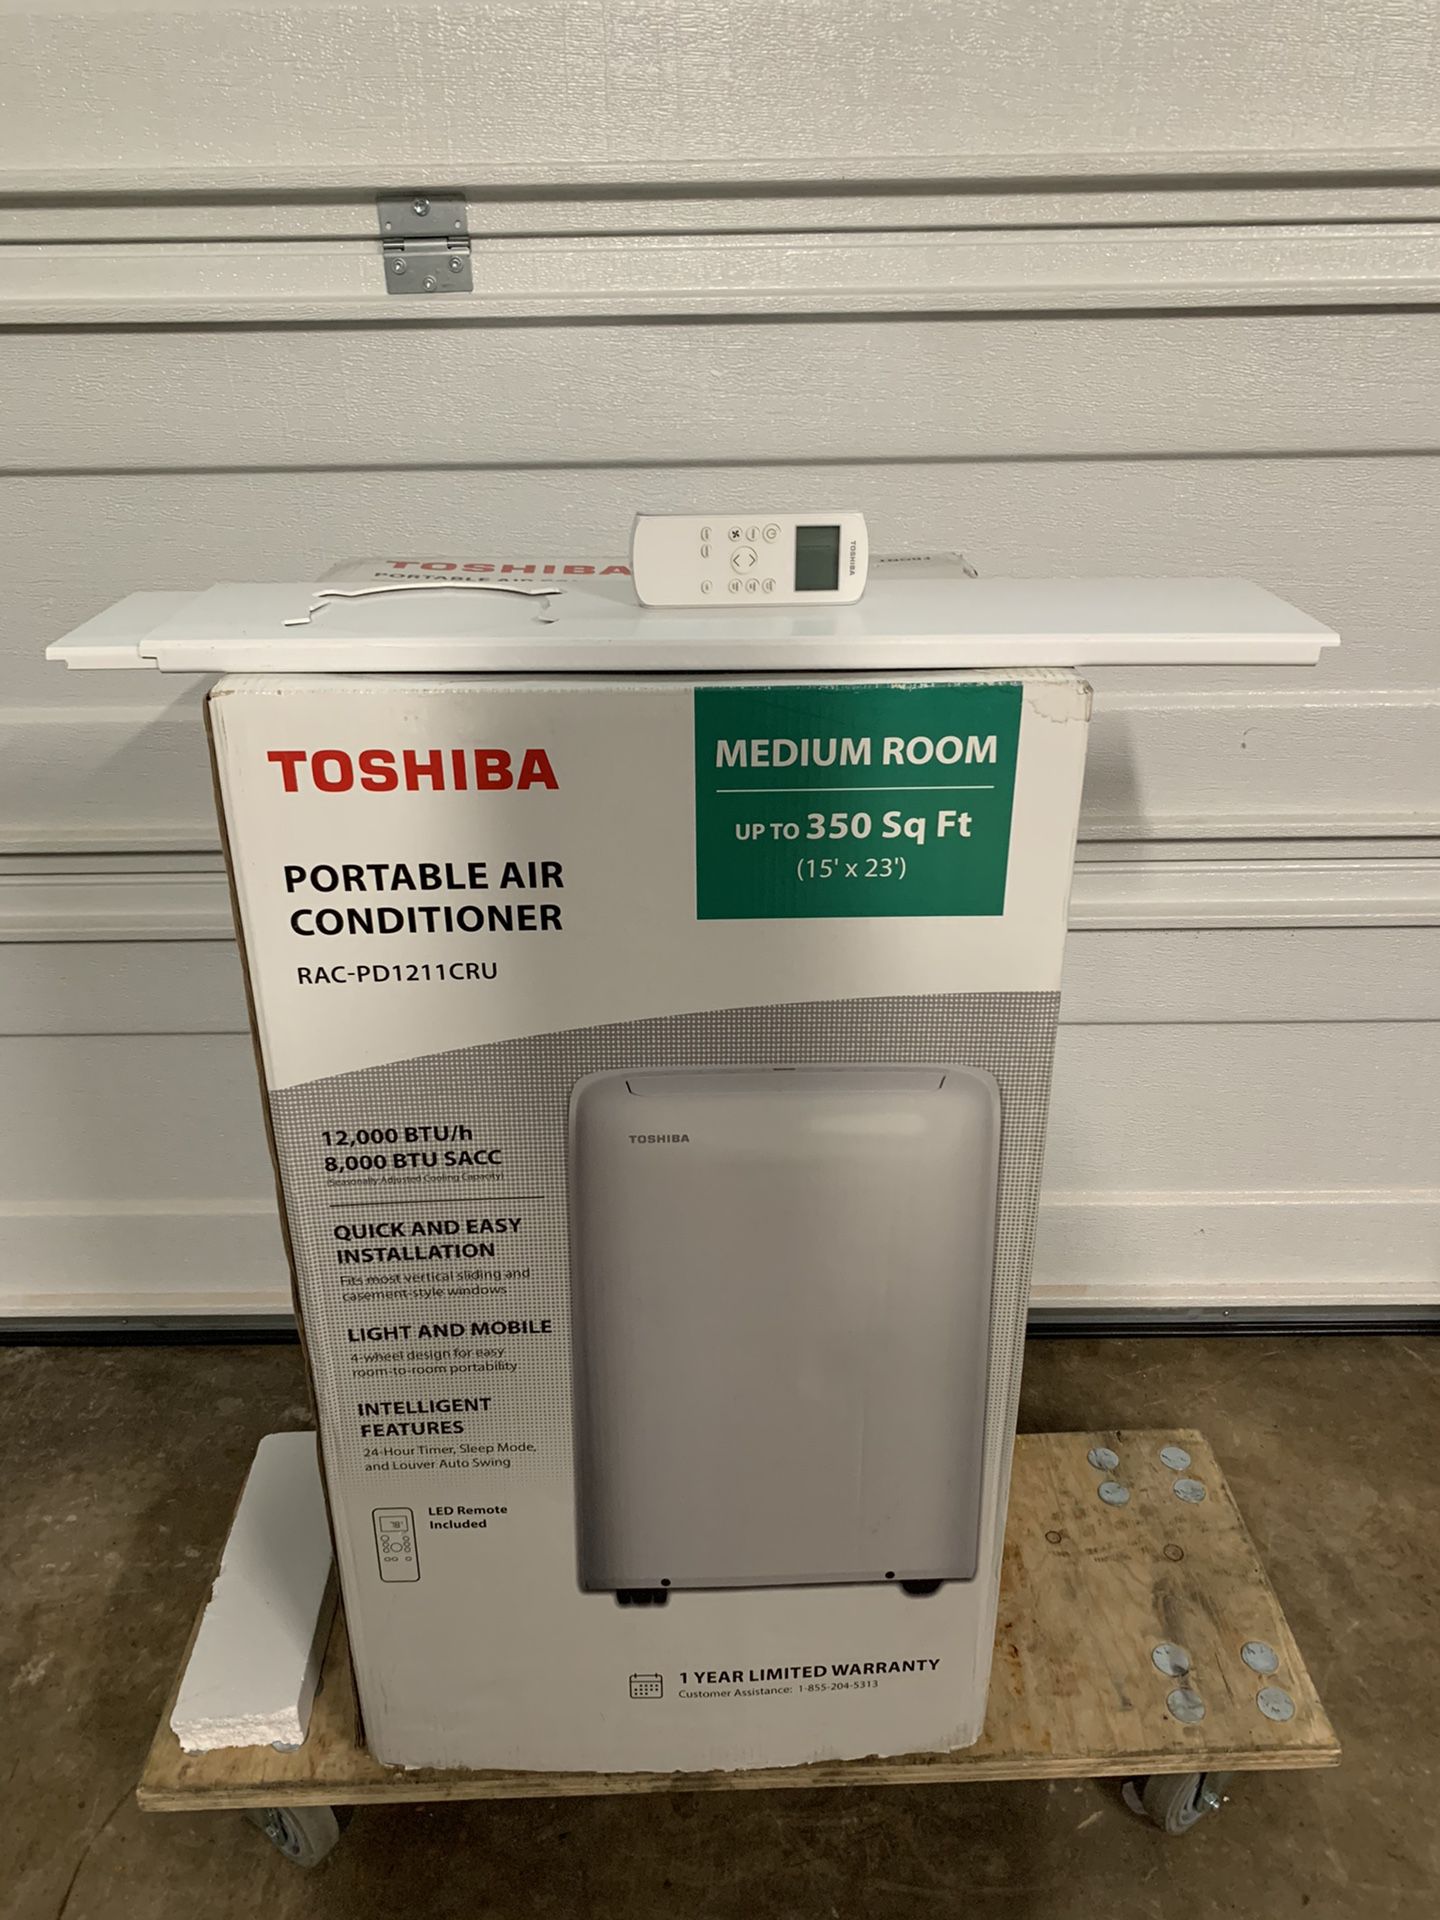 Toshiba portable A/C